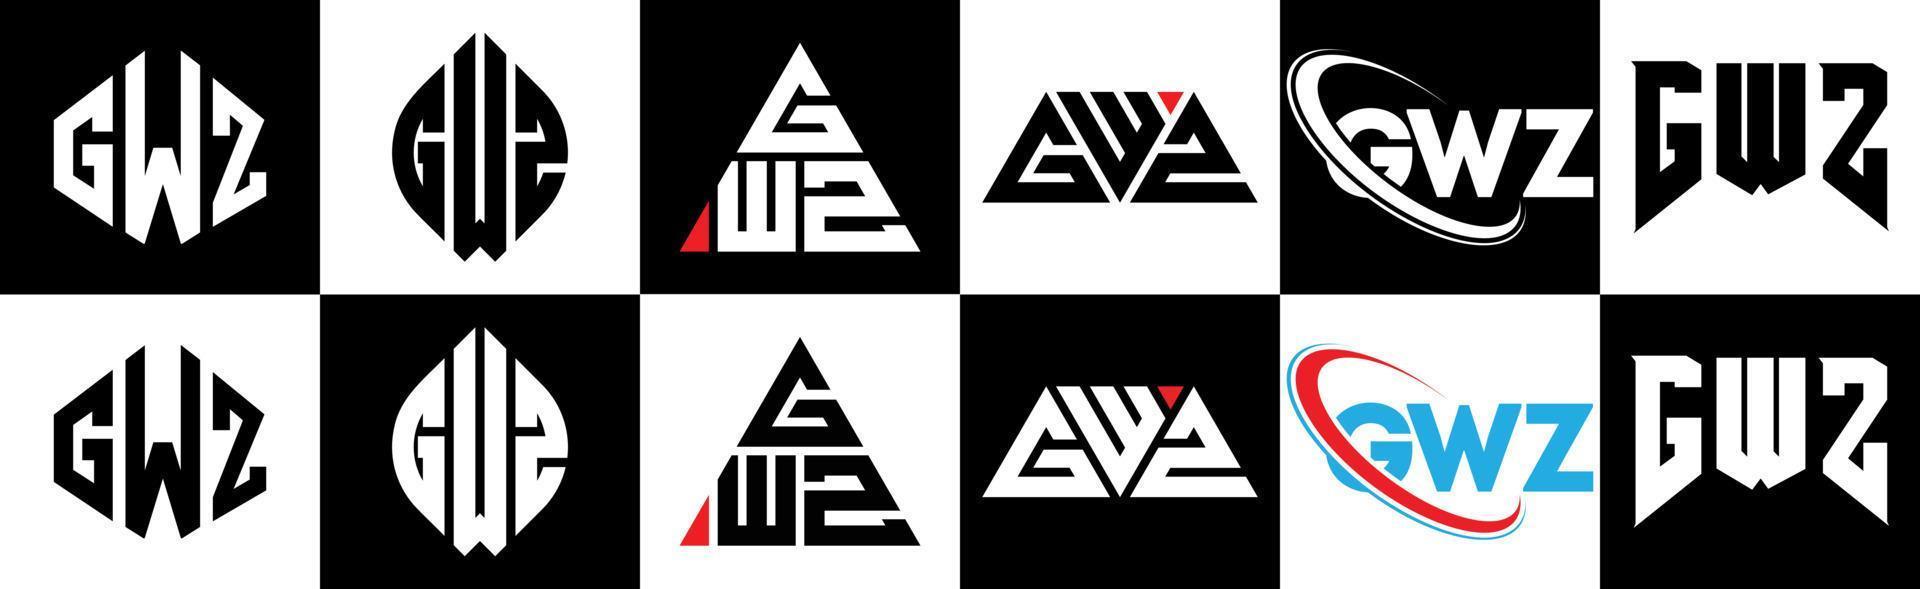 création de logo de lettre gwz en six styles. gwz polygone, cercle, triangle, hexagone, style plat et simple avec logo de lettre de variation de couleur noir et blanc dans un plan de travail. logo gwz minimaliste et classique vecteur